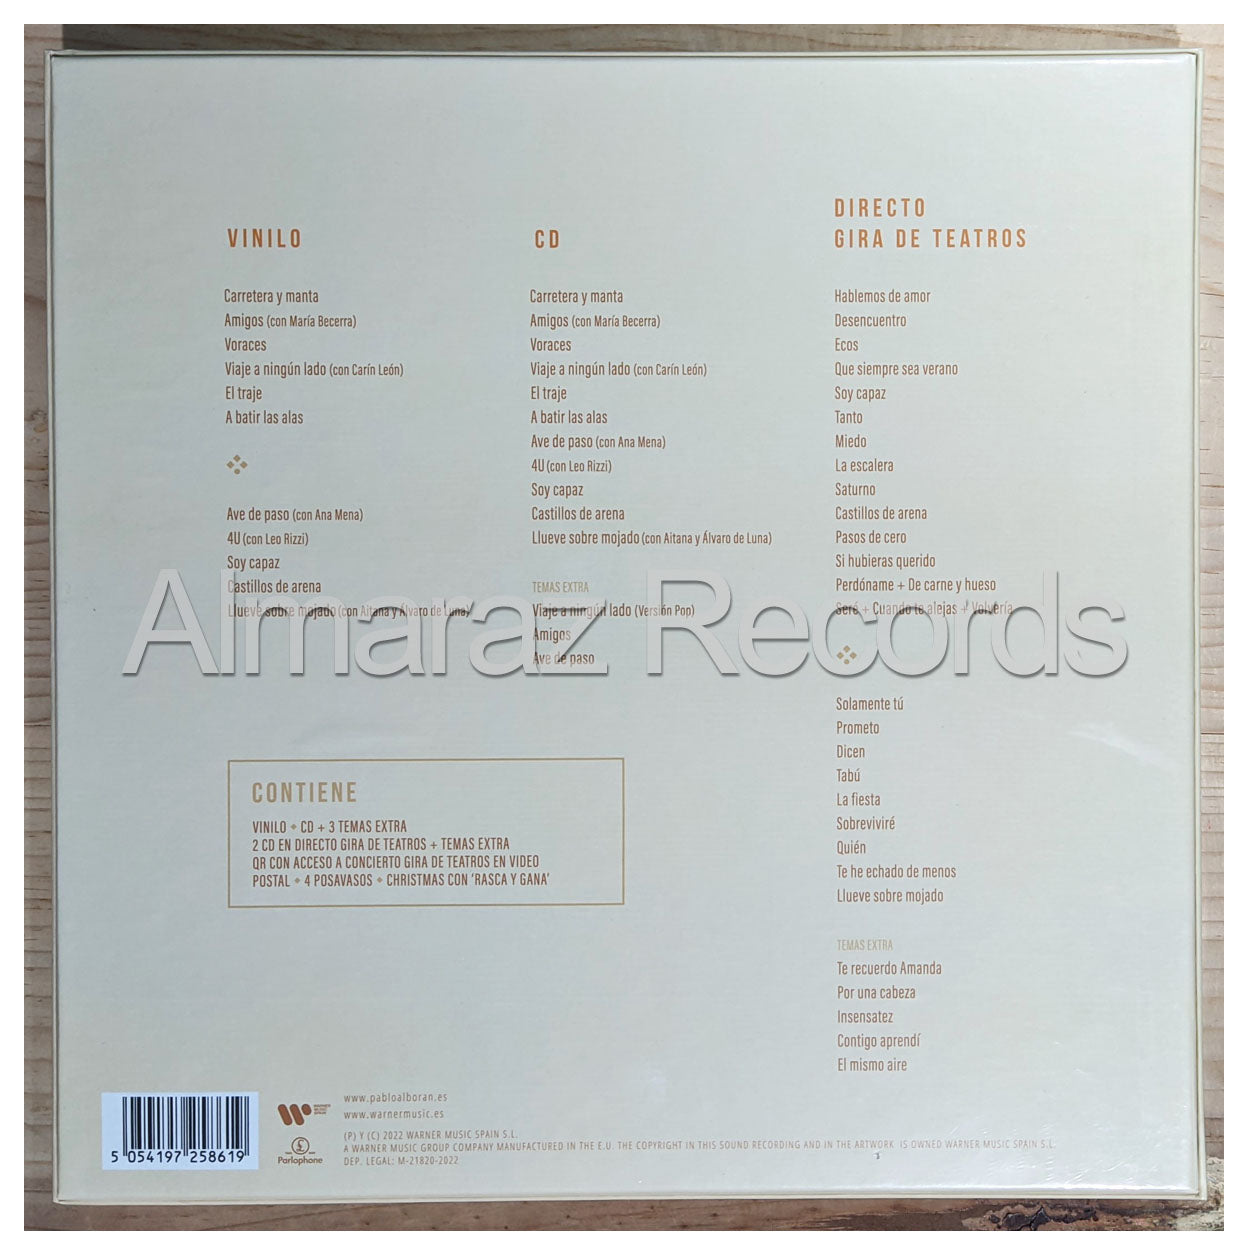 Pablo Alboran La Cuarta Hoja Deluxe Vinyl LP+CD Boxset